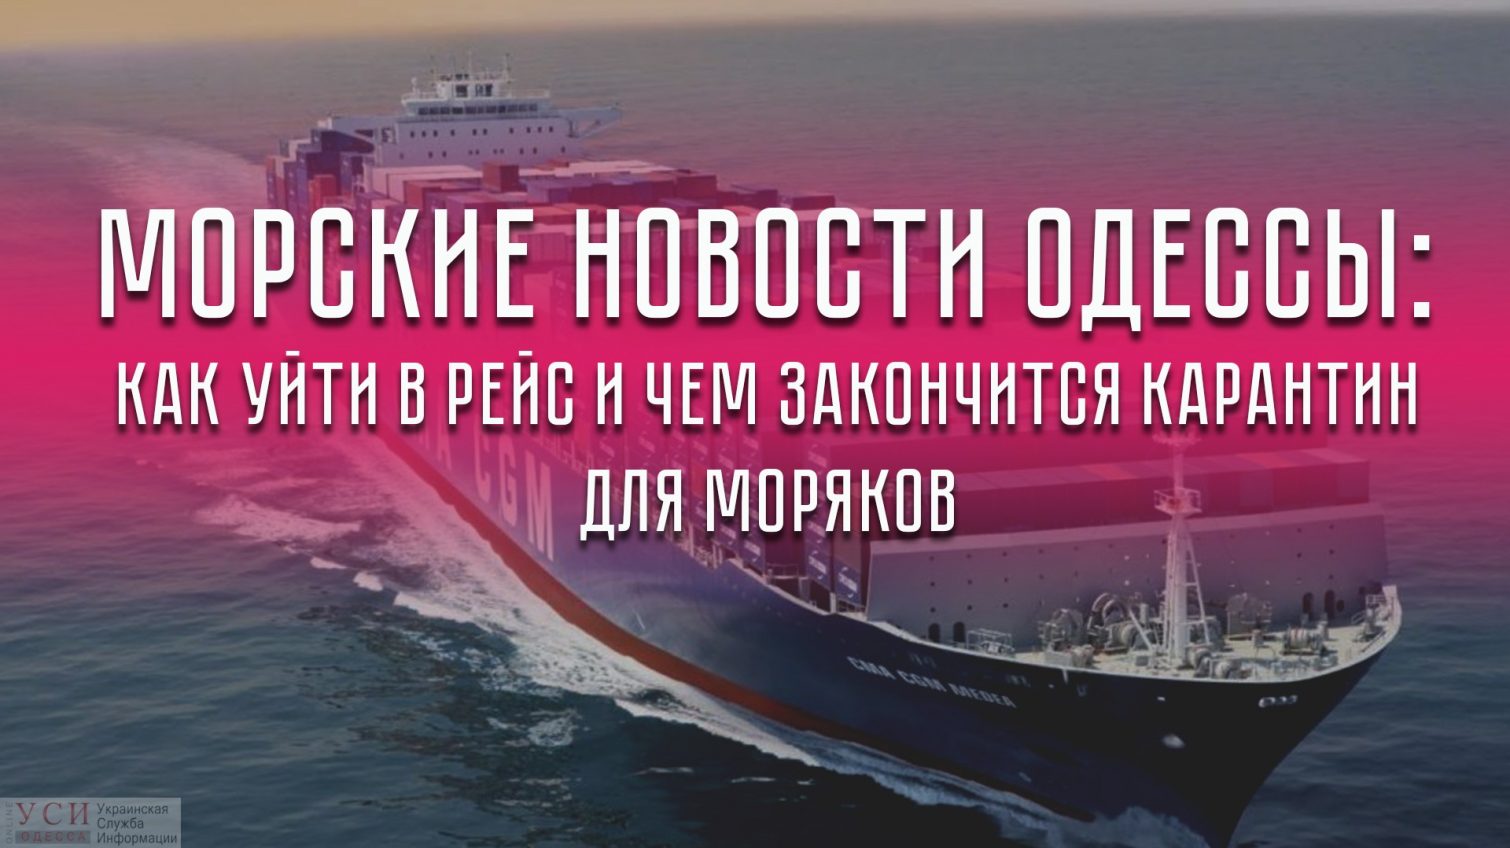 Морские новости Одессы: как уйти в рейс и чем закончится карантин для моряков «фото»